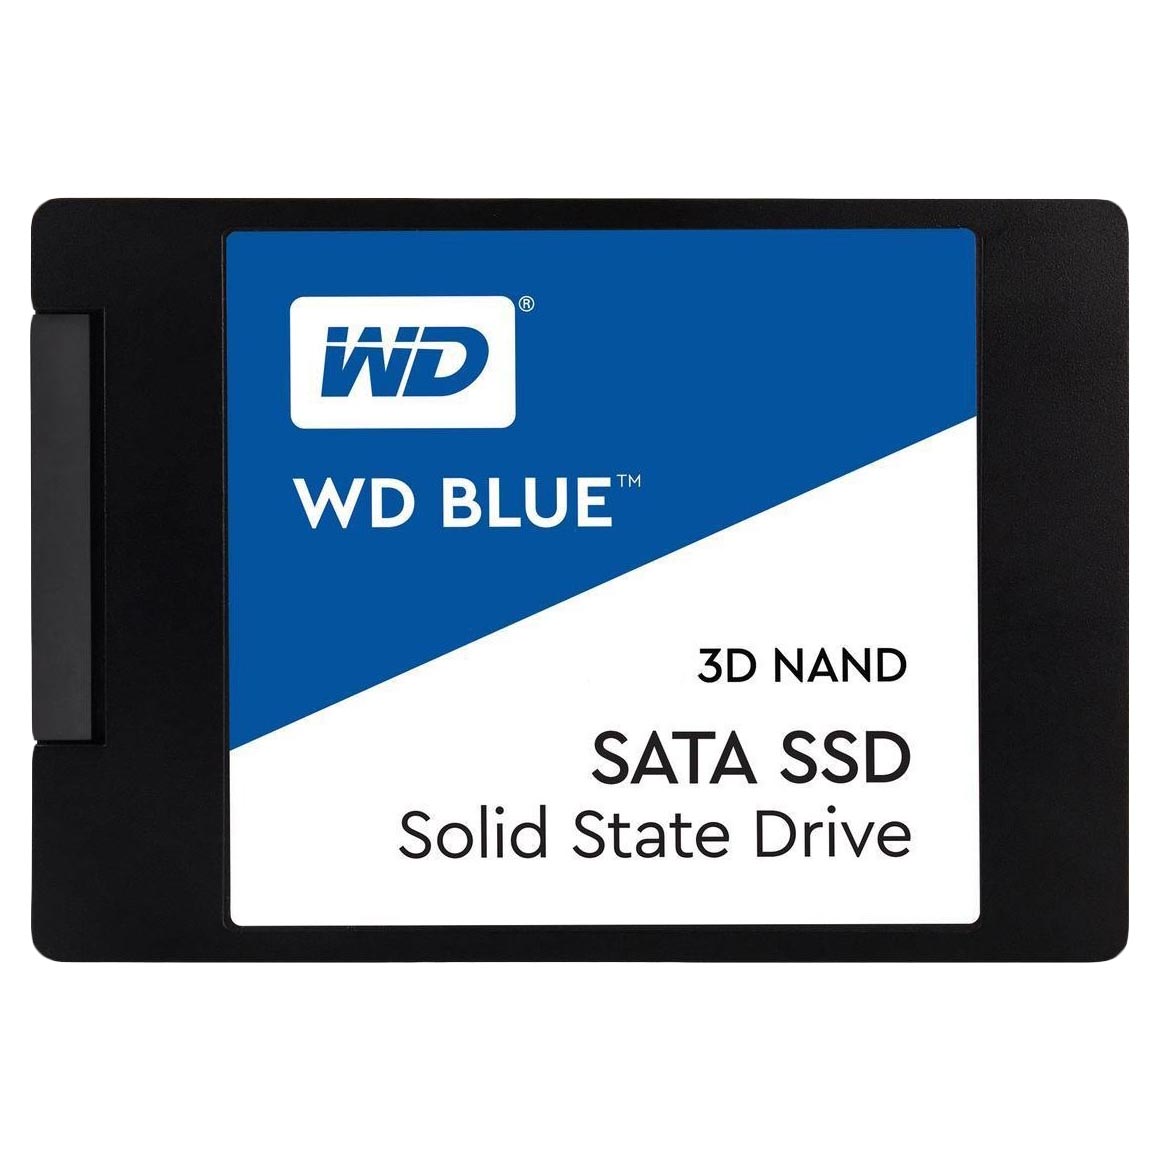 твердотельный накопитель western digital wd blue 250 гб sata wds250g2b0a Внутренний твердотельный накопитель Western Digital WD Blue SATA, WDS250G2B0A, 250Гб, 2,5